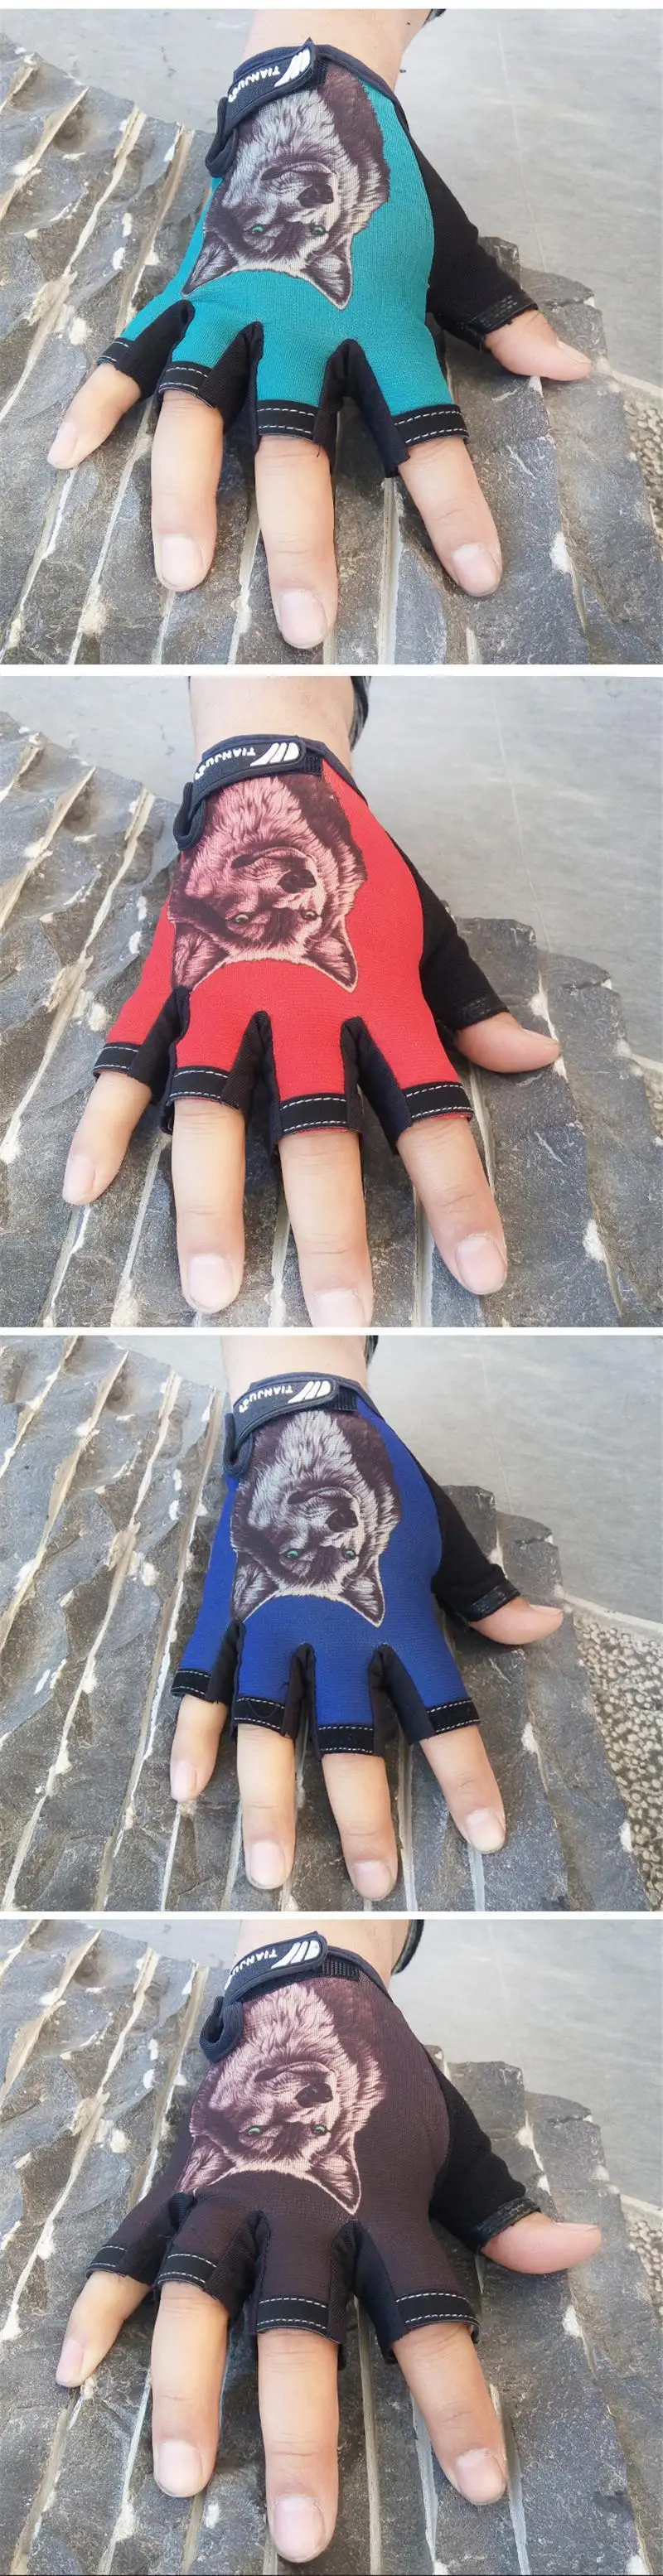 Longkeepers новые женские мужские перчатки без пальцев перчатки на половину пальцев Варежки с рисунком волка и черепа рабочие перчатки guantes eldiven